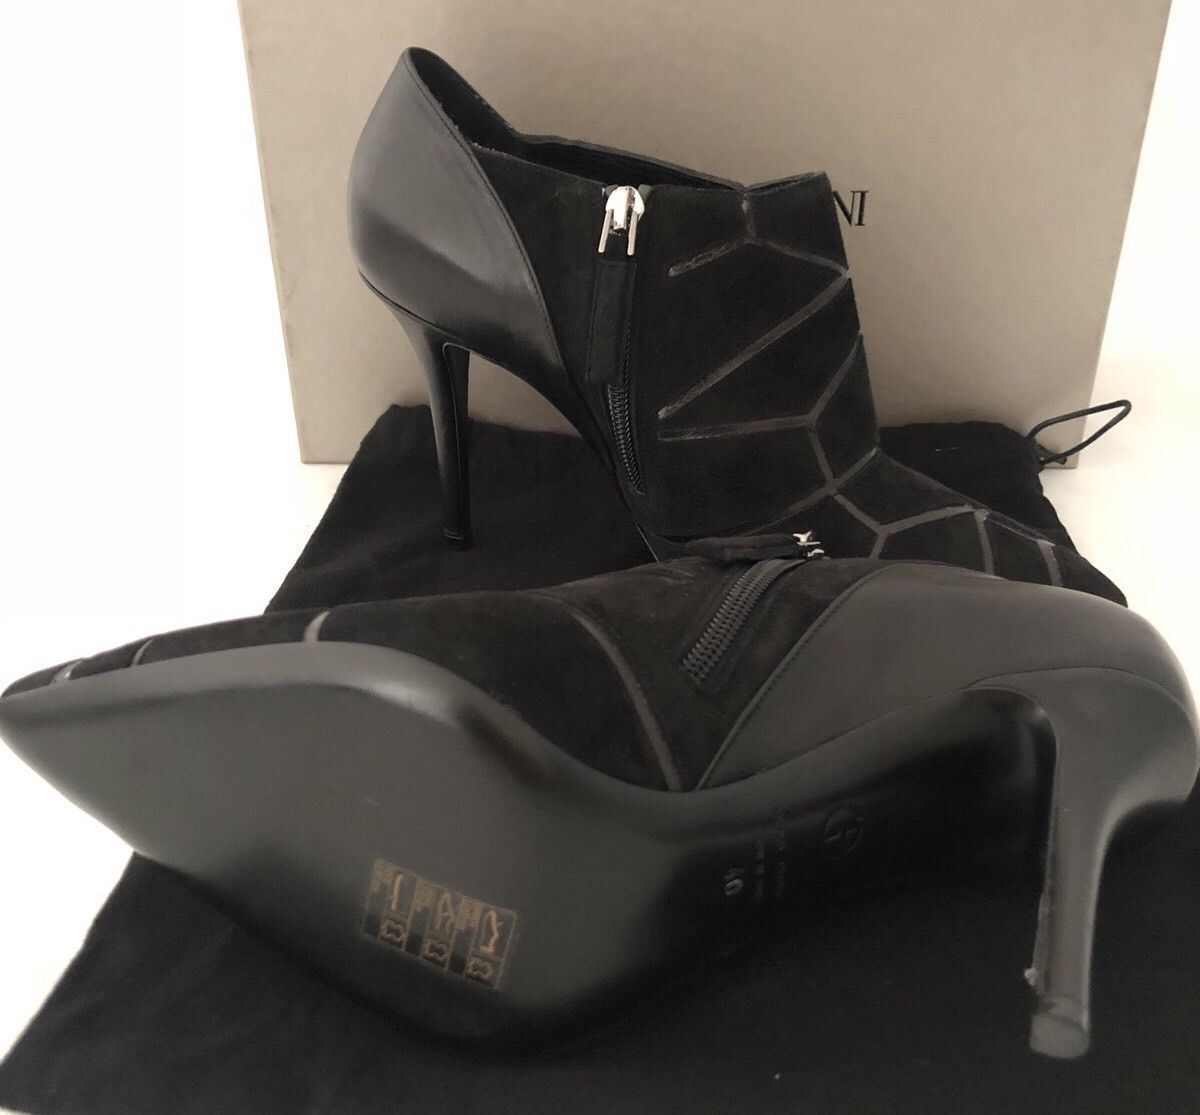 NIB $1095 Giorgio Armani Milano Women's Black Suede Ankle Boots 40 Eu IT X1M267 - BAYSUPERSTORE